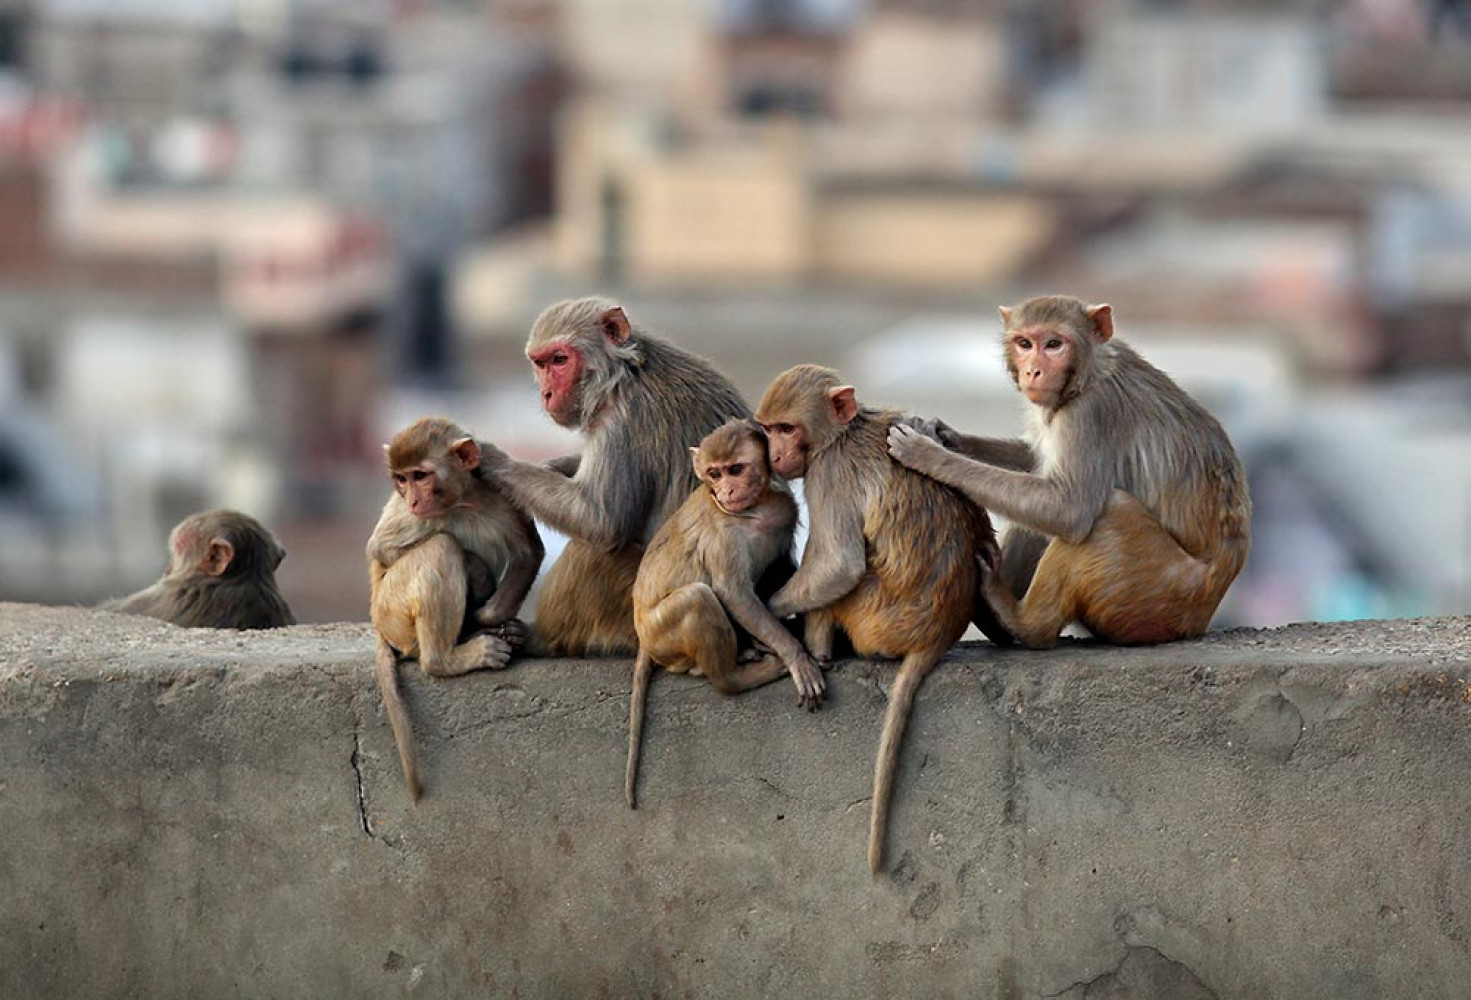 Maymunlar hakkında 10 ilginç bilgi